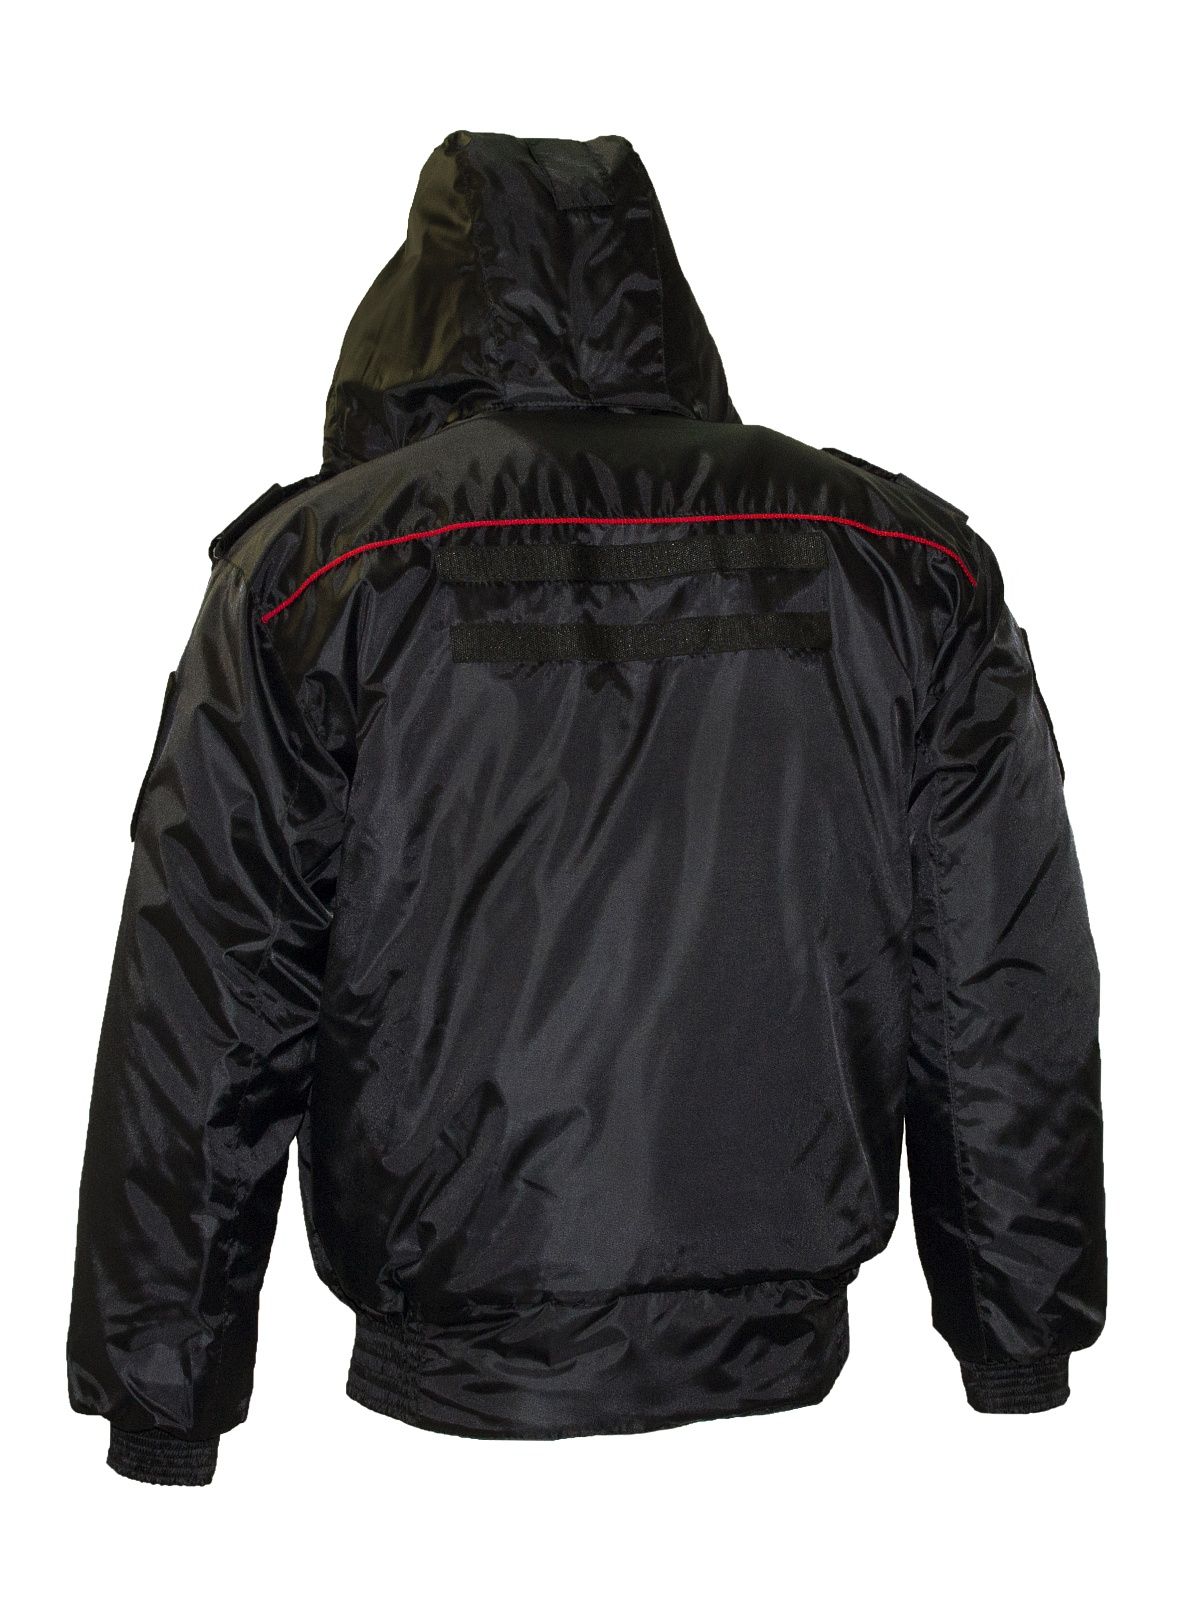 Куртка Полиция зимняя оксфорд (КМБТ)